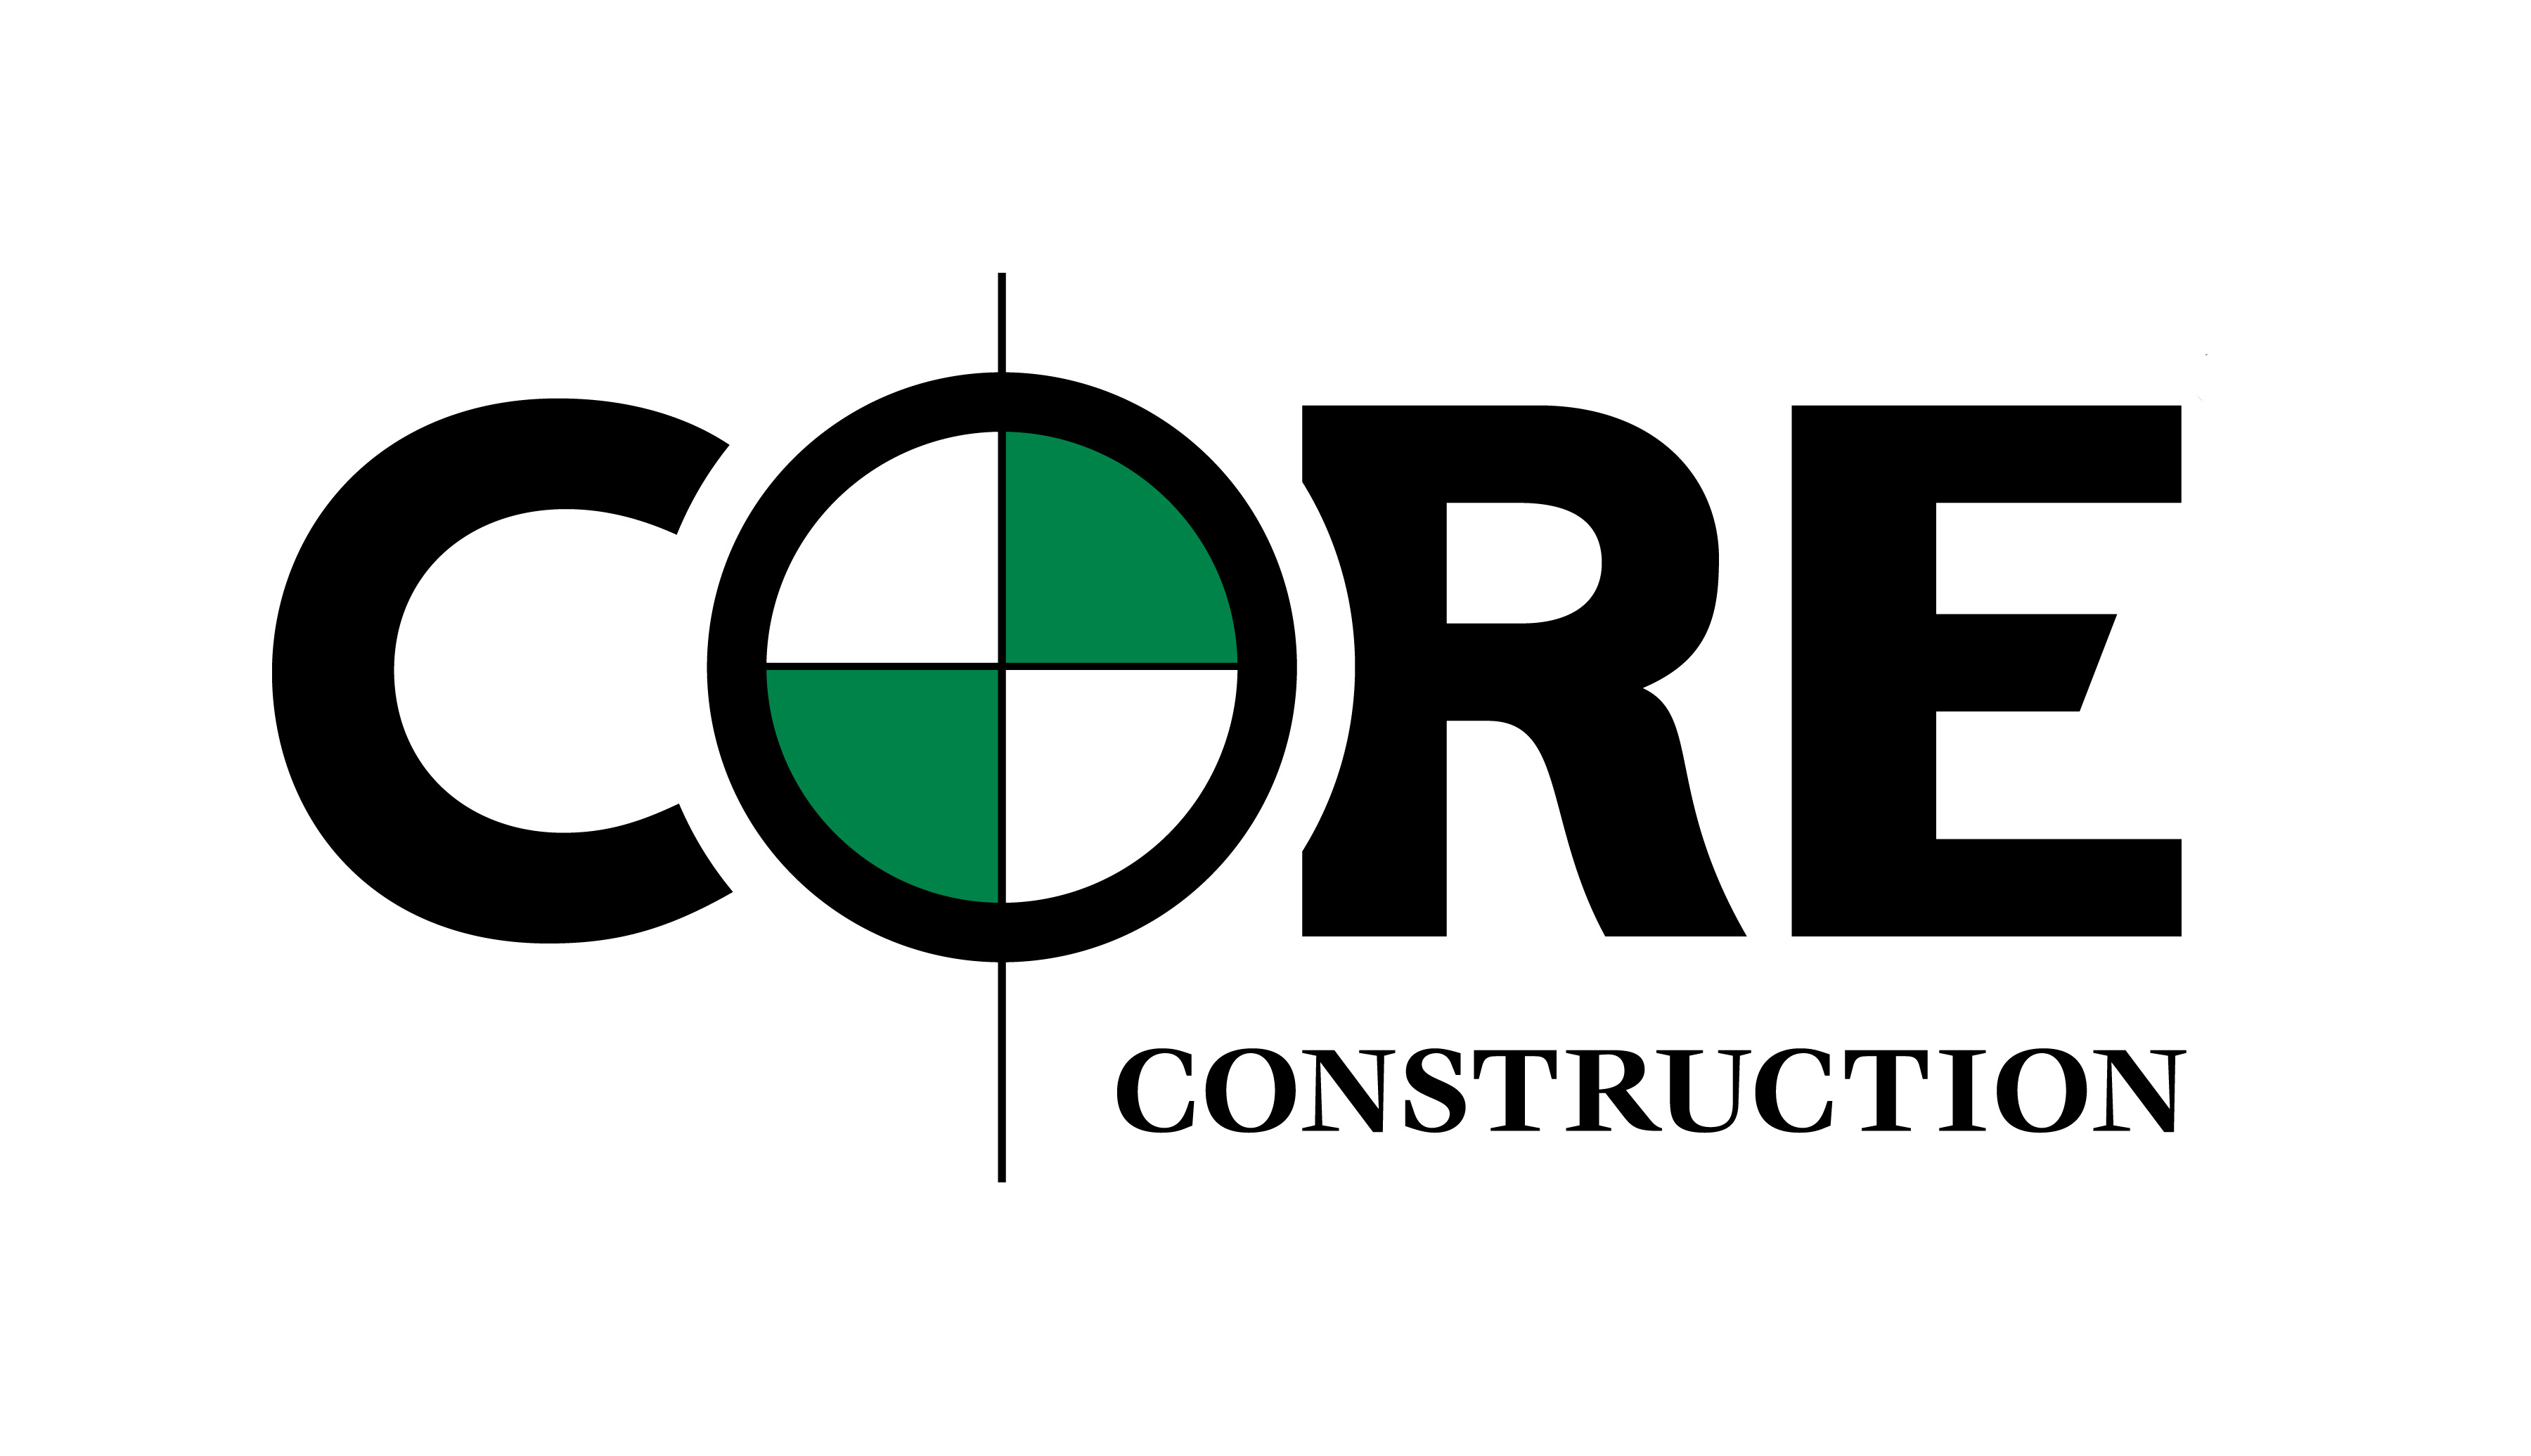 Core Construction 